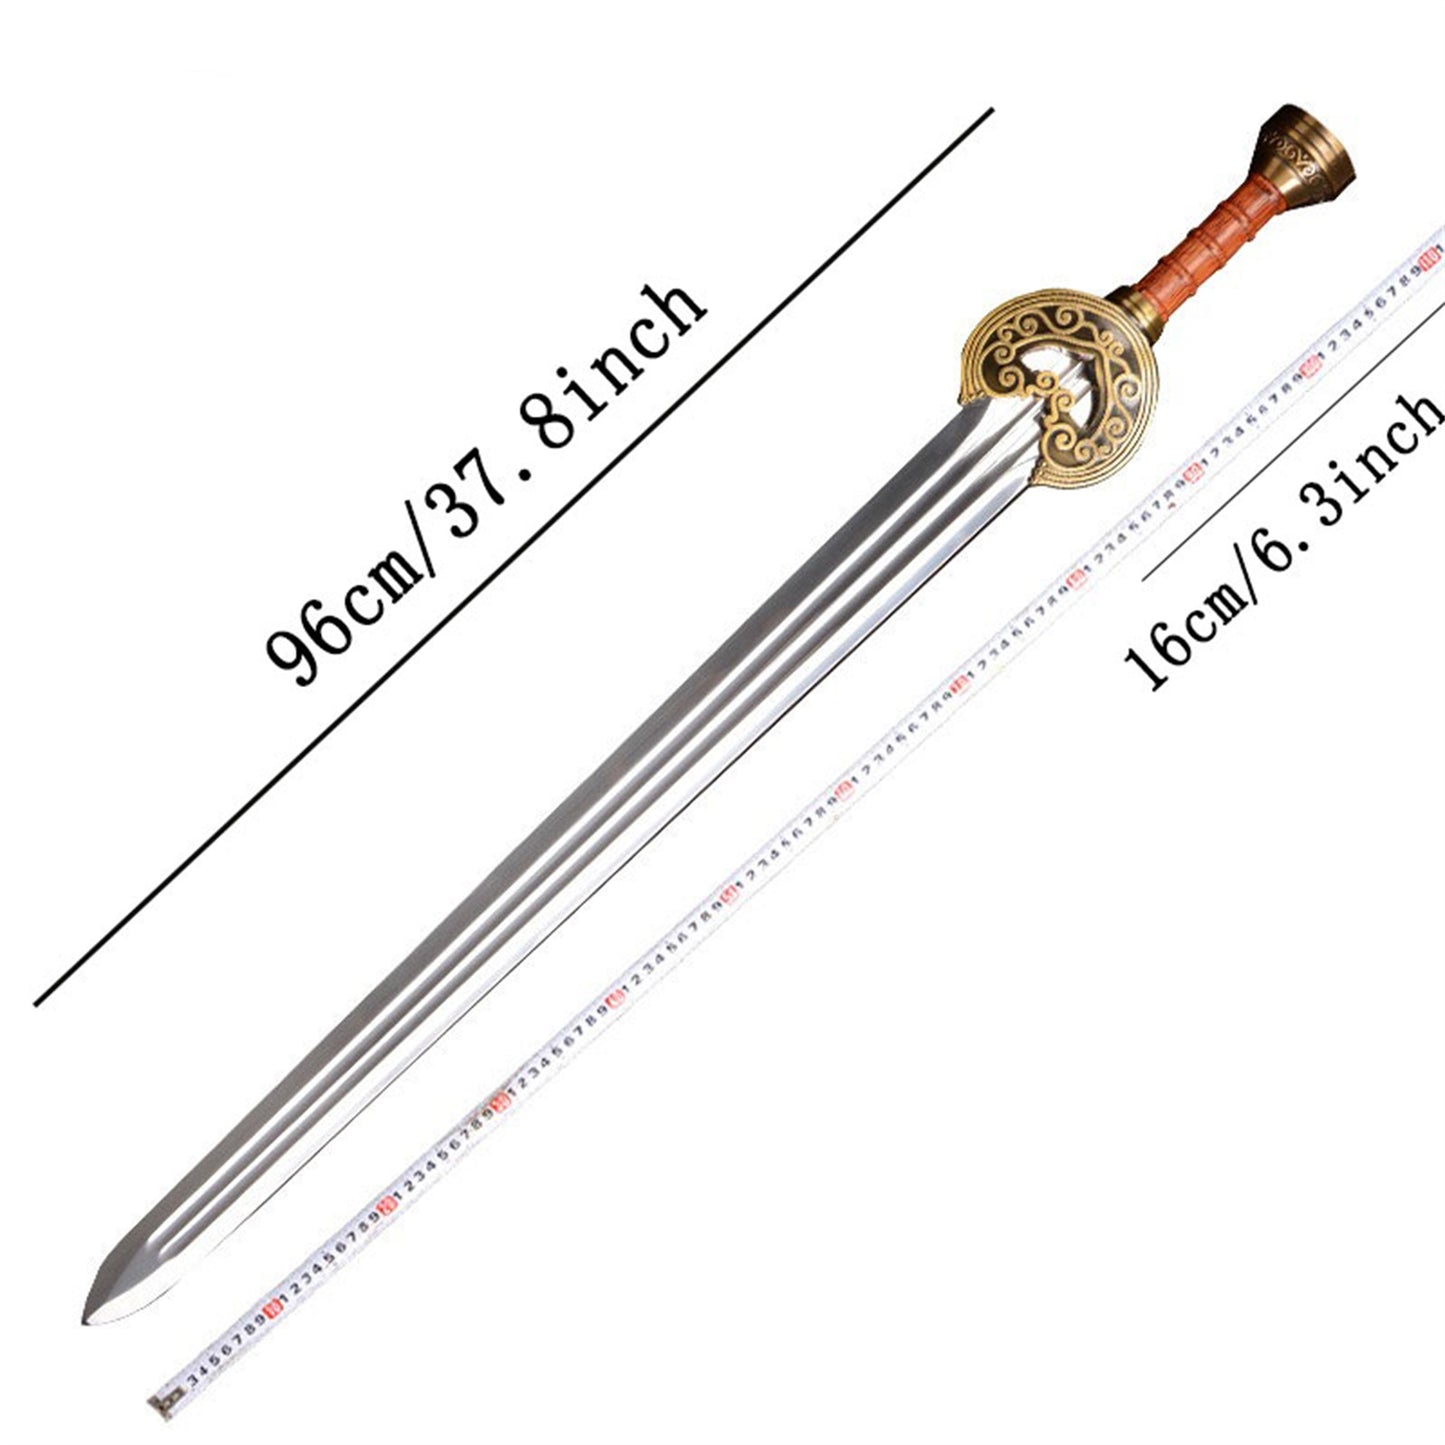 Herrugrim Sword Of King Rohan Metal Replica Cosplay Prop